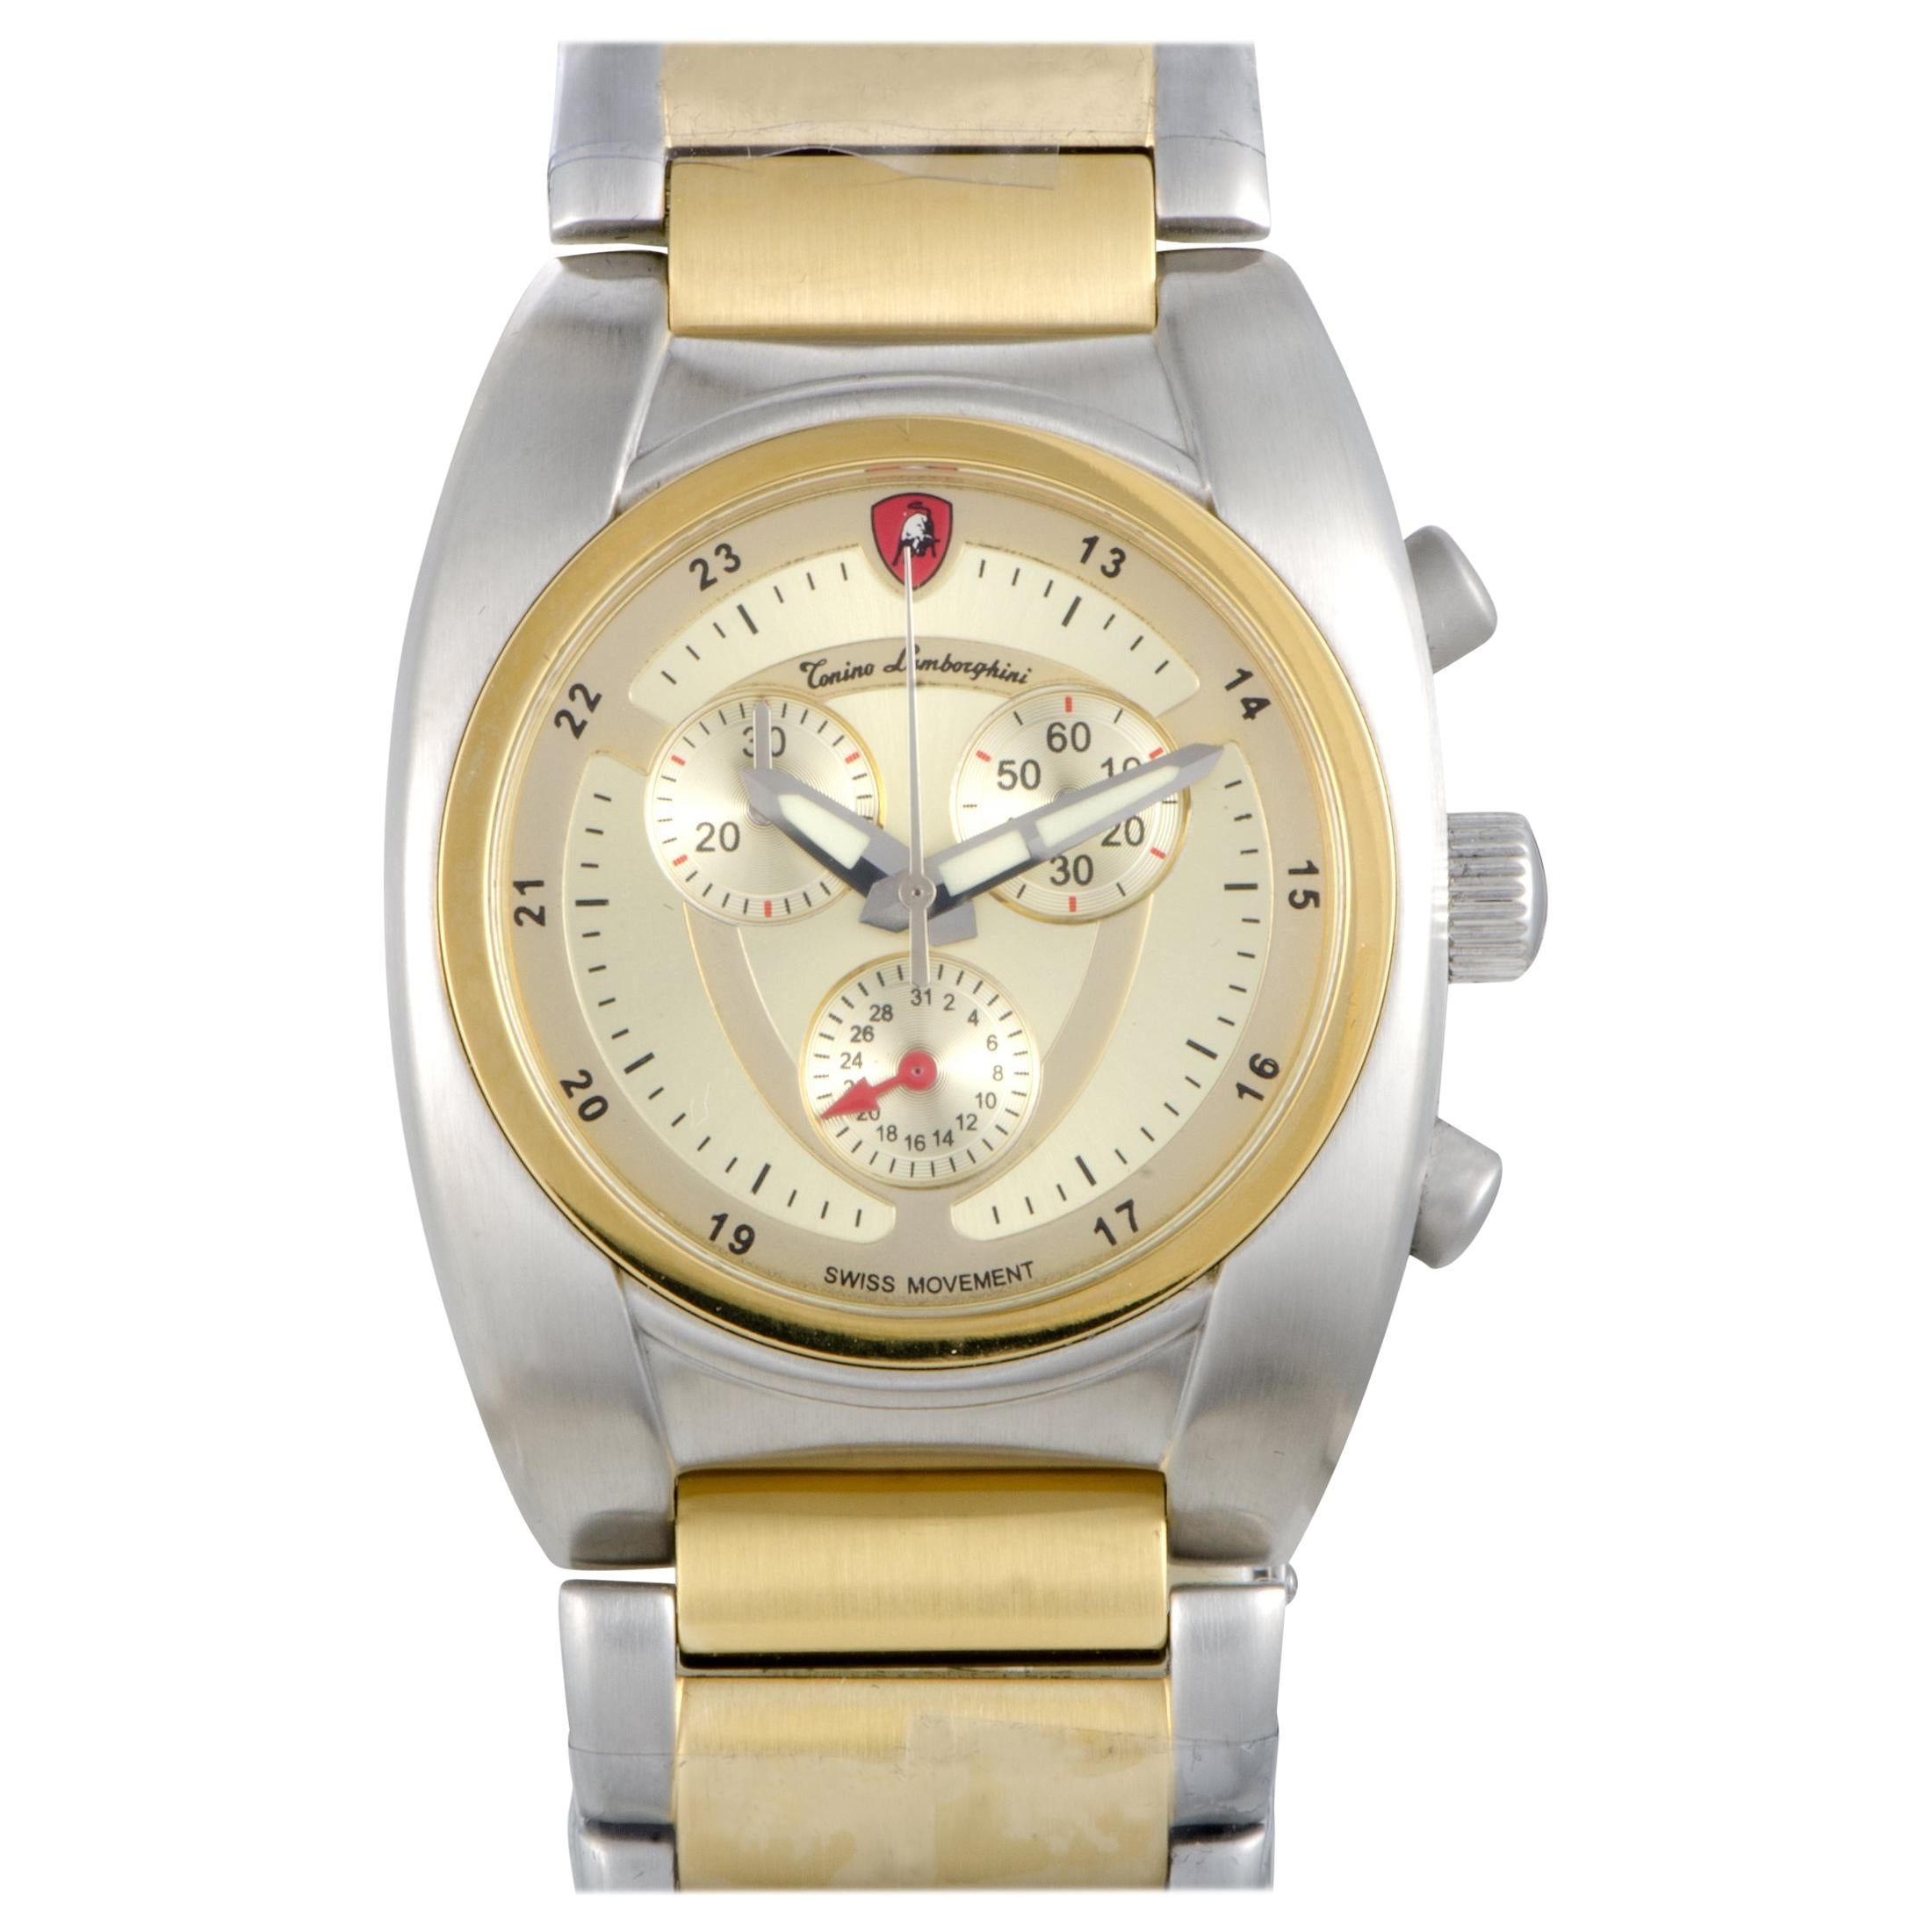 Tonino Lamborghini EN Models Men's Quartz Chronograph Watch EN038.306